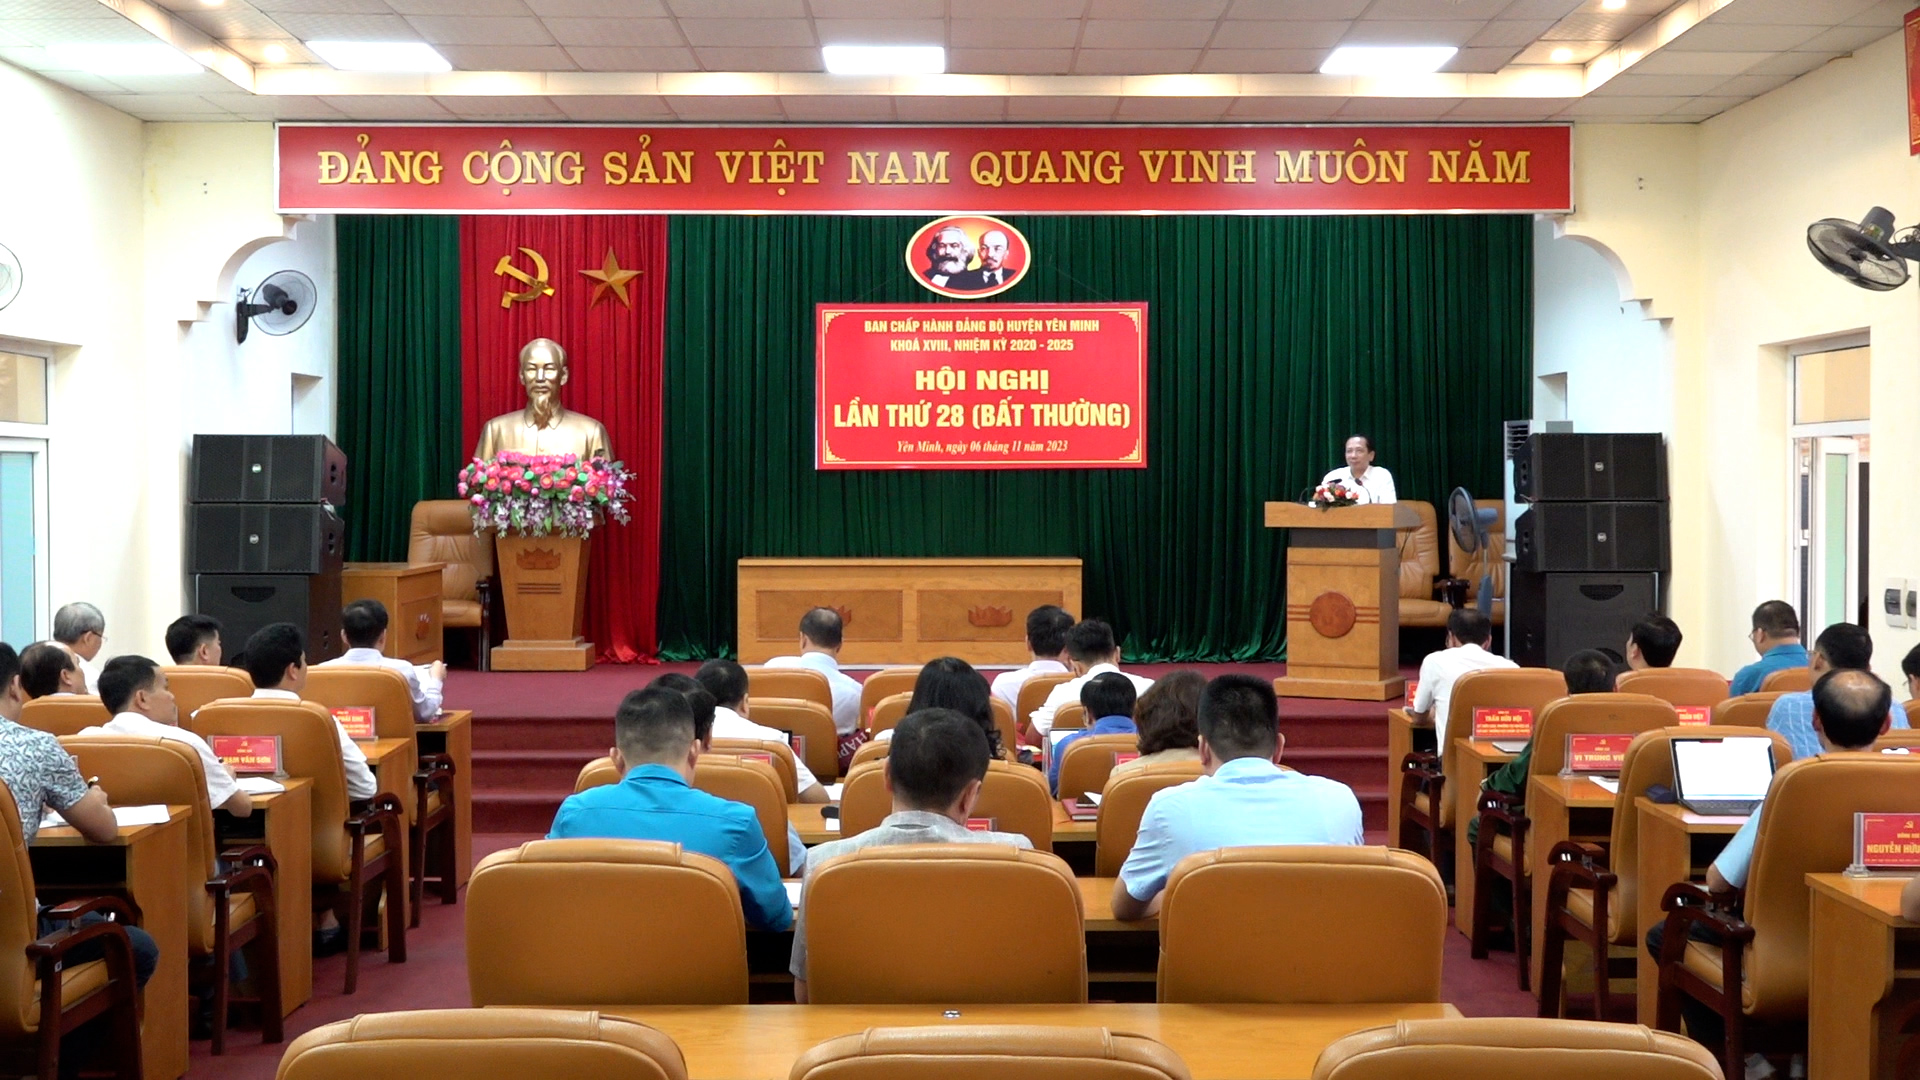 Hội nghị BCH Đảng bộ huyện Yên Minh lần thứ 28 nhiệm kỳ 2020 - 2025